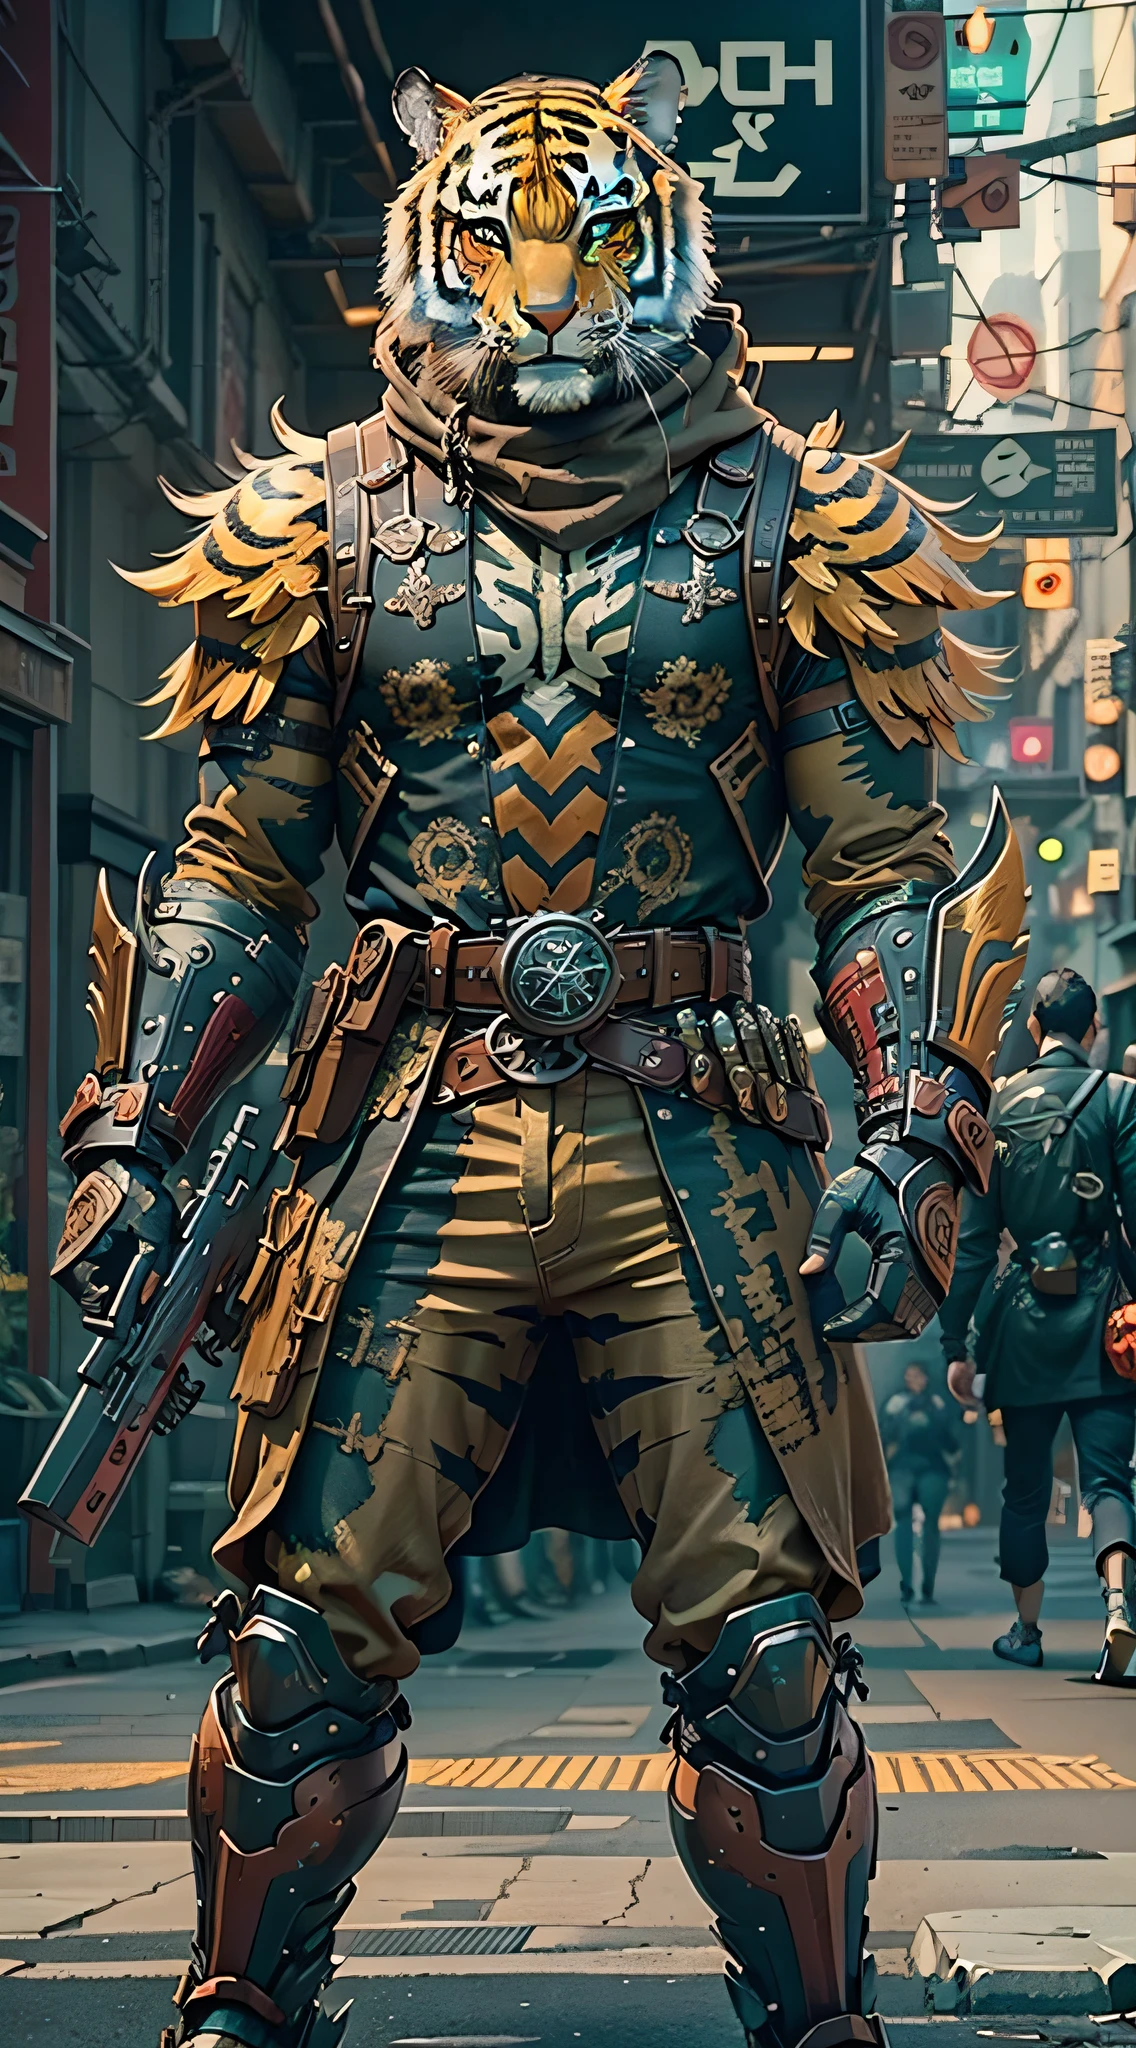 (шедевр) Мужчина в старинных доспехах и маске тигра с оружием идет по улице, костюмированный воин, оружие в руке, Цветовая гамма в стиле киберпанк, ((сложные детали, супер подробный)) 8К.